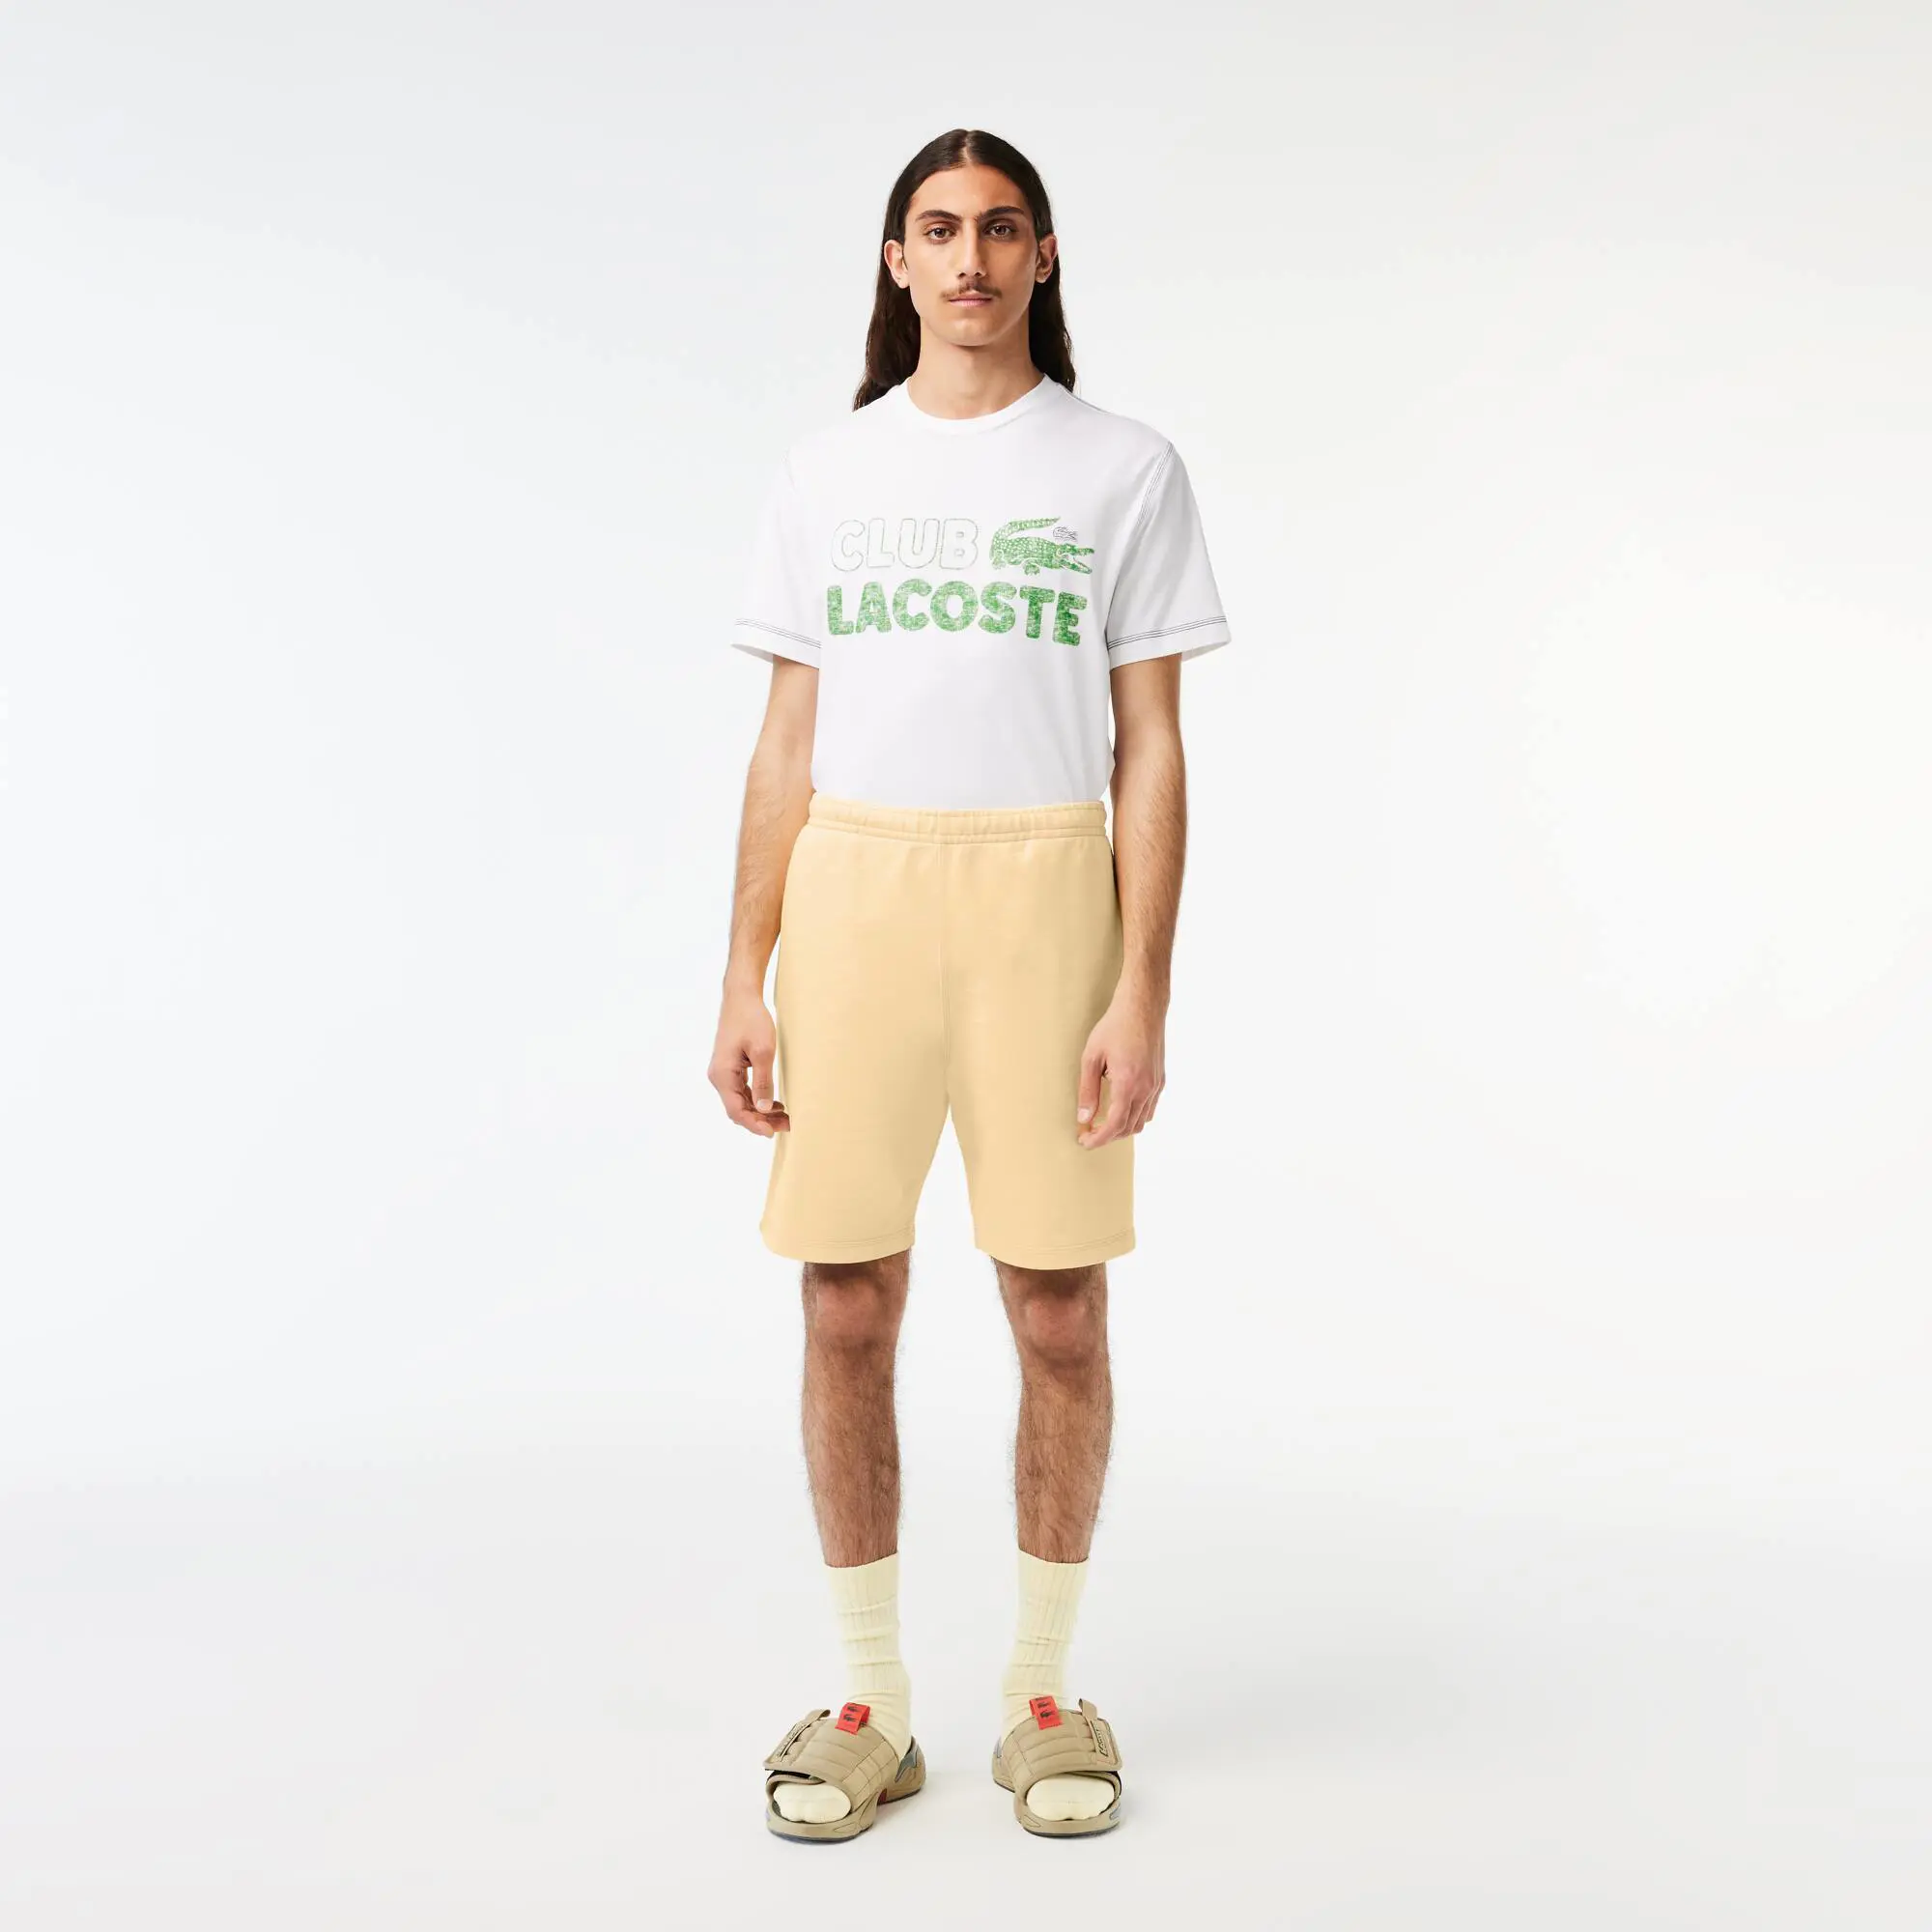 Lacoste Shorts de vellón de algodón orgánicos sin arn sobre Lacoste para hombres. 1